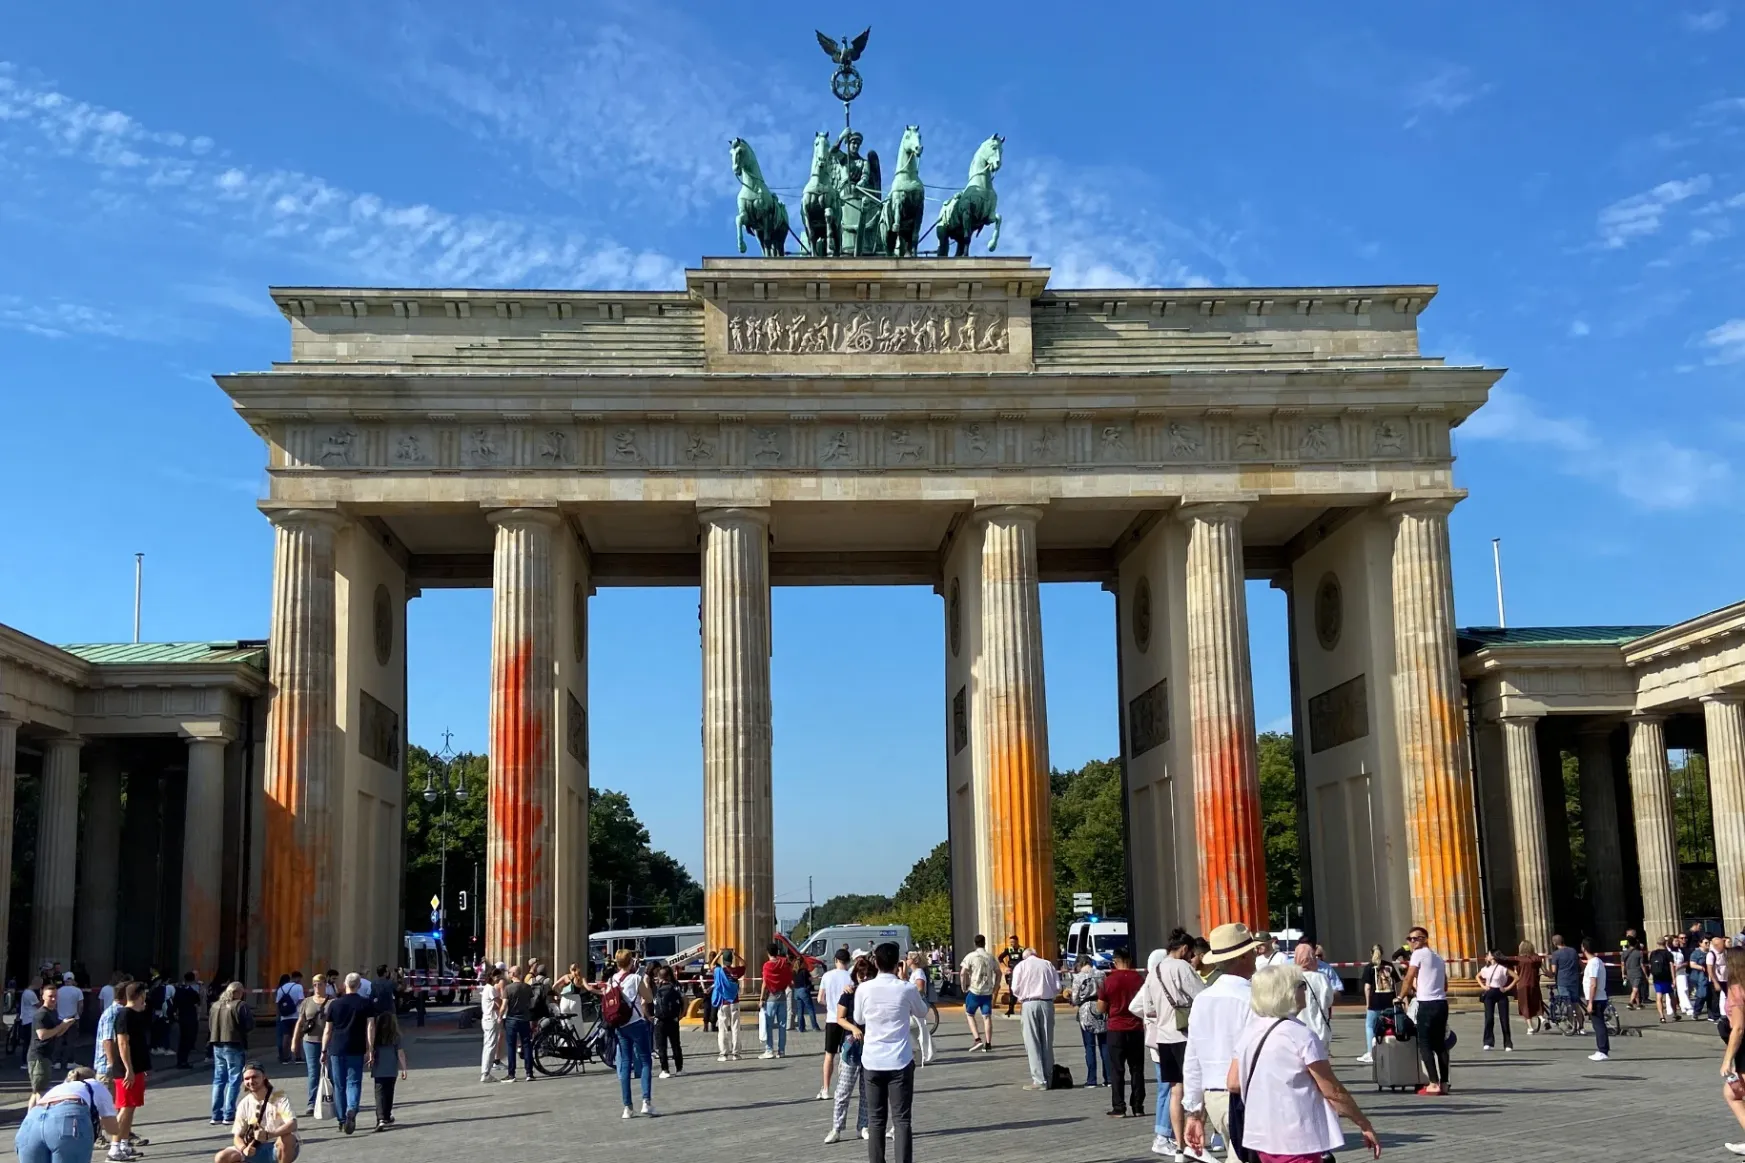 Színes festékkel fújták le a berlini Brandenburgi kaput